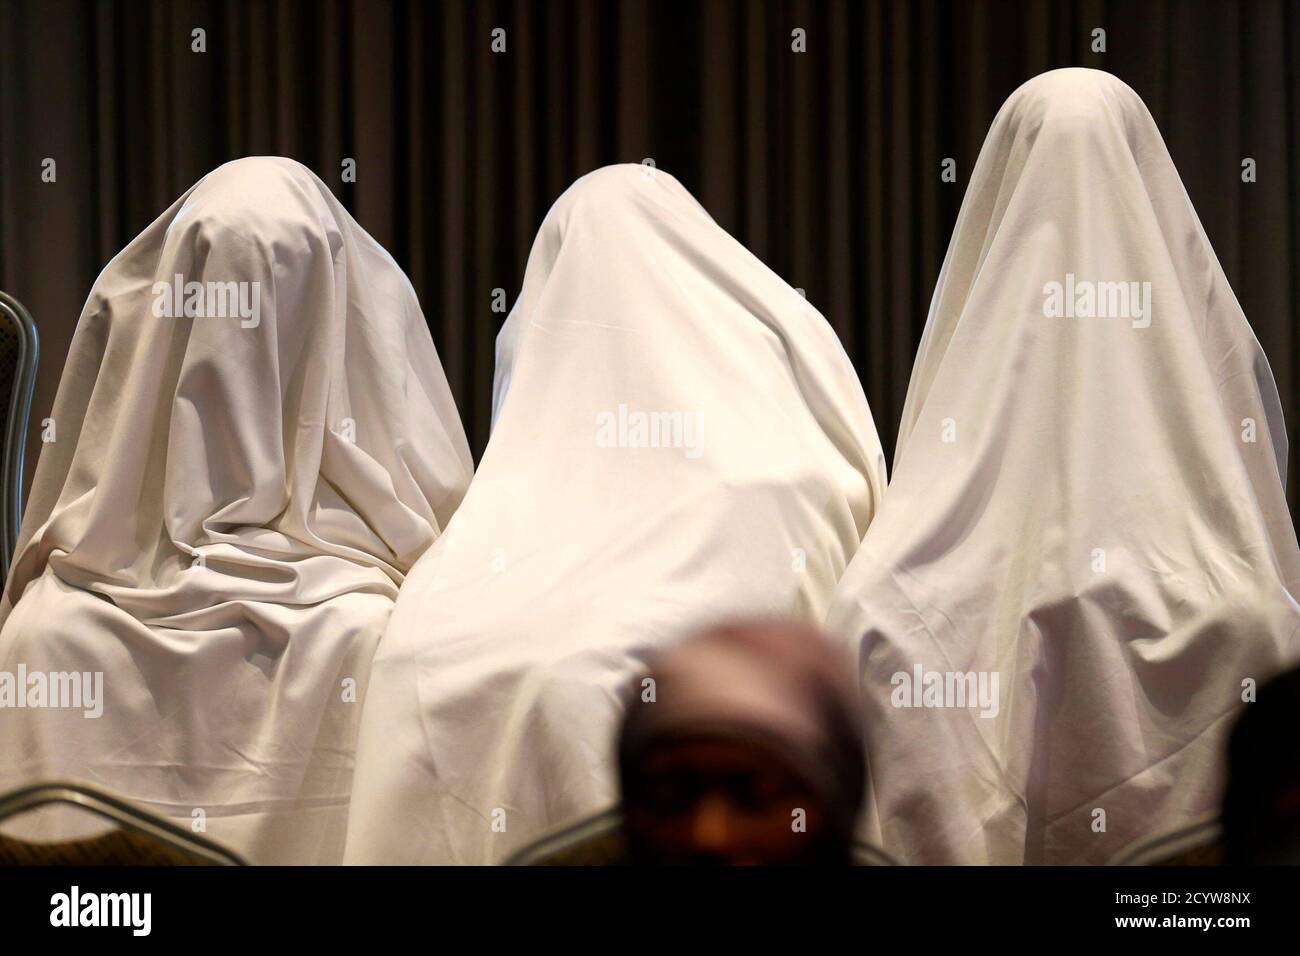 Drei Mädchen, die nach ihrer Entführung im abgelegenen Dorf Chibok entkommen waren, sind am 5. Juni 2014 bei einer Pressekonferenz in Lagos mit weißen Laken bedeckt. Mehrere Mütter von Mädchen, die in Nigeria von der militanten Gruppe Boko Haram festgehalten werden, versammelten sich am Donnerstag in Lagos, wo ihnen Nichtregierungsorganisationen und ein Kongressabgeordneter des US-Bundesstaates Therapie und Unterstützung boten. Boko Haram, eine militante Gruppe, die eine Kampagne zur Schaffung eines islamischen Staates in der Region führte, entführte am 14. April 276 Mädchen einer Schule in Chibok. Die drei Mädchen waren mit weißen Laken bedeckt, um ihre Identität aus Angst zu schützen o Stockfoto